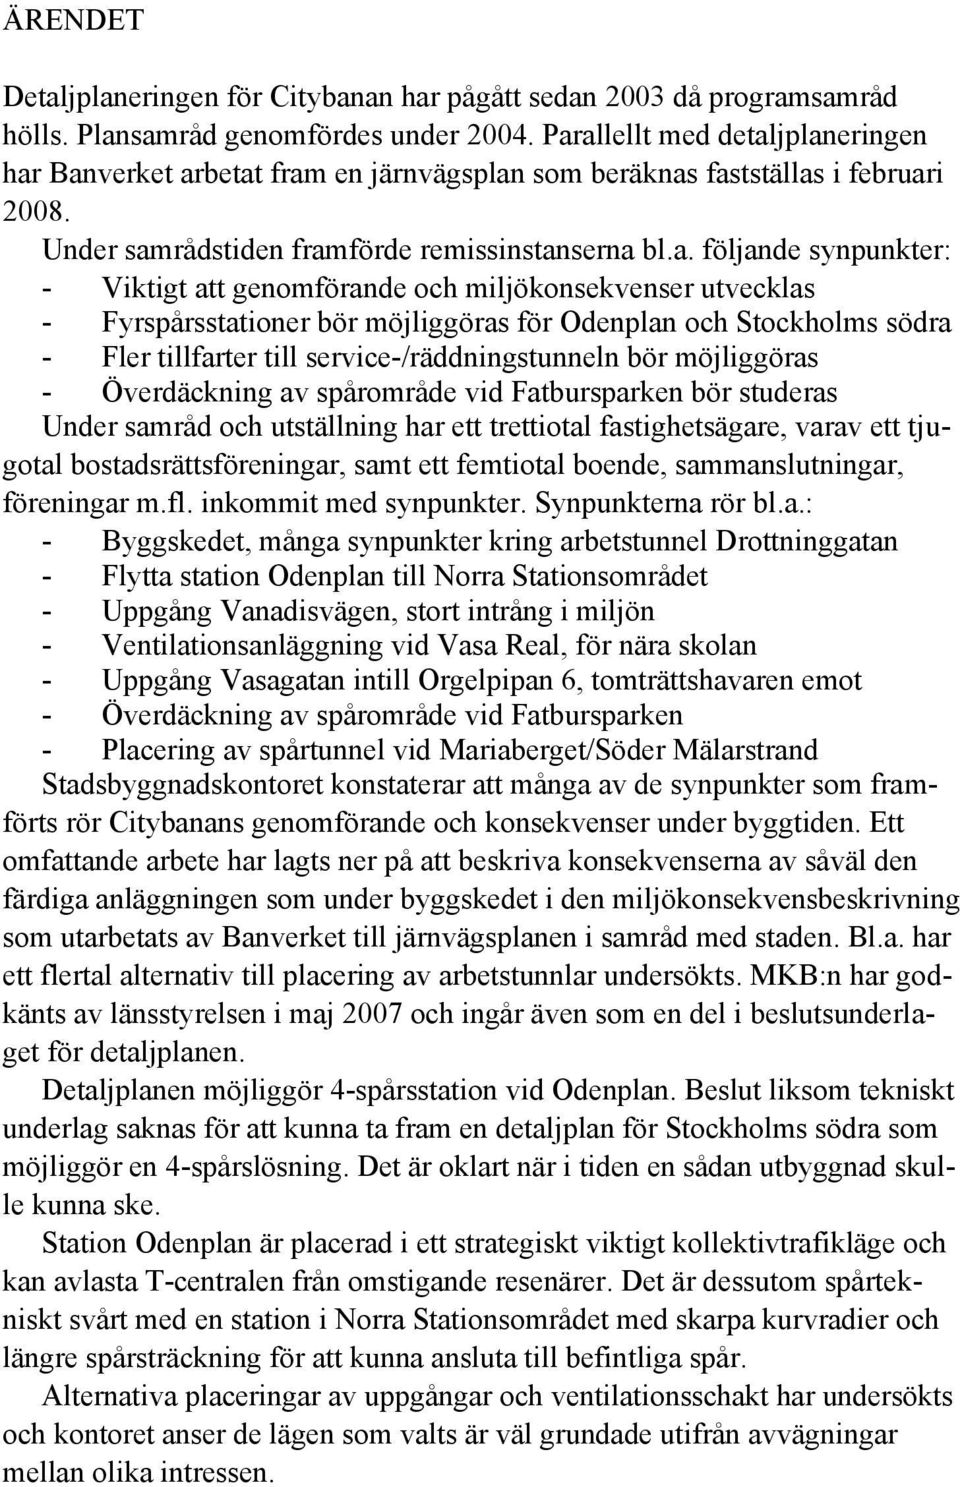 Viktigt att genomförande och miljökonsekvenser utvecklas - Fyrspårsstationer bör möjliggöras för Odenplan och Stockholms södra - Fler tillfarter till service-/räddningstunneln bör möjliggöras -